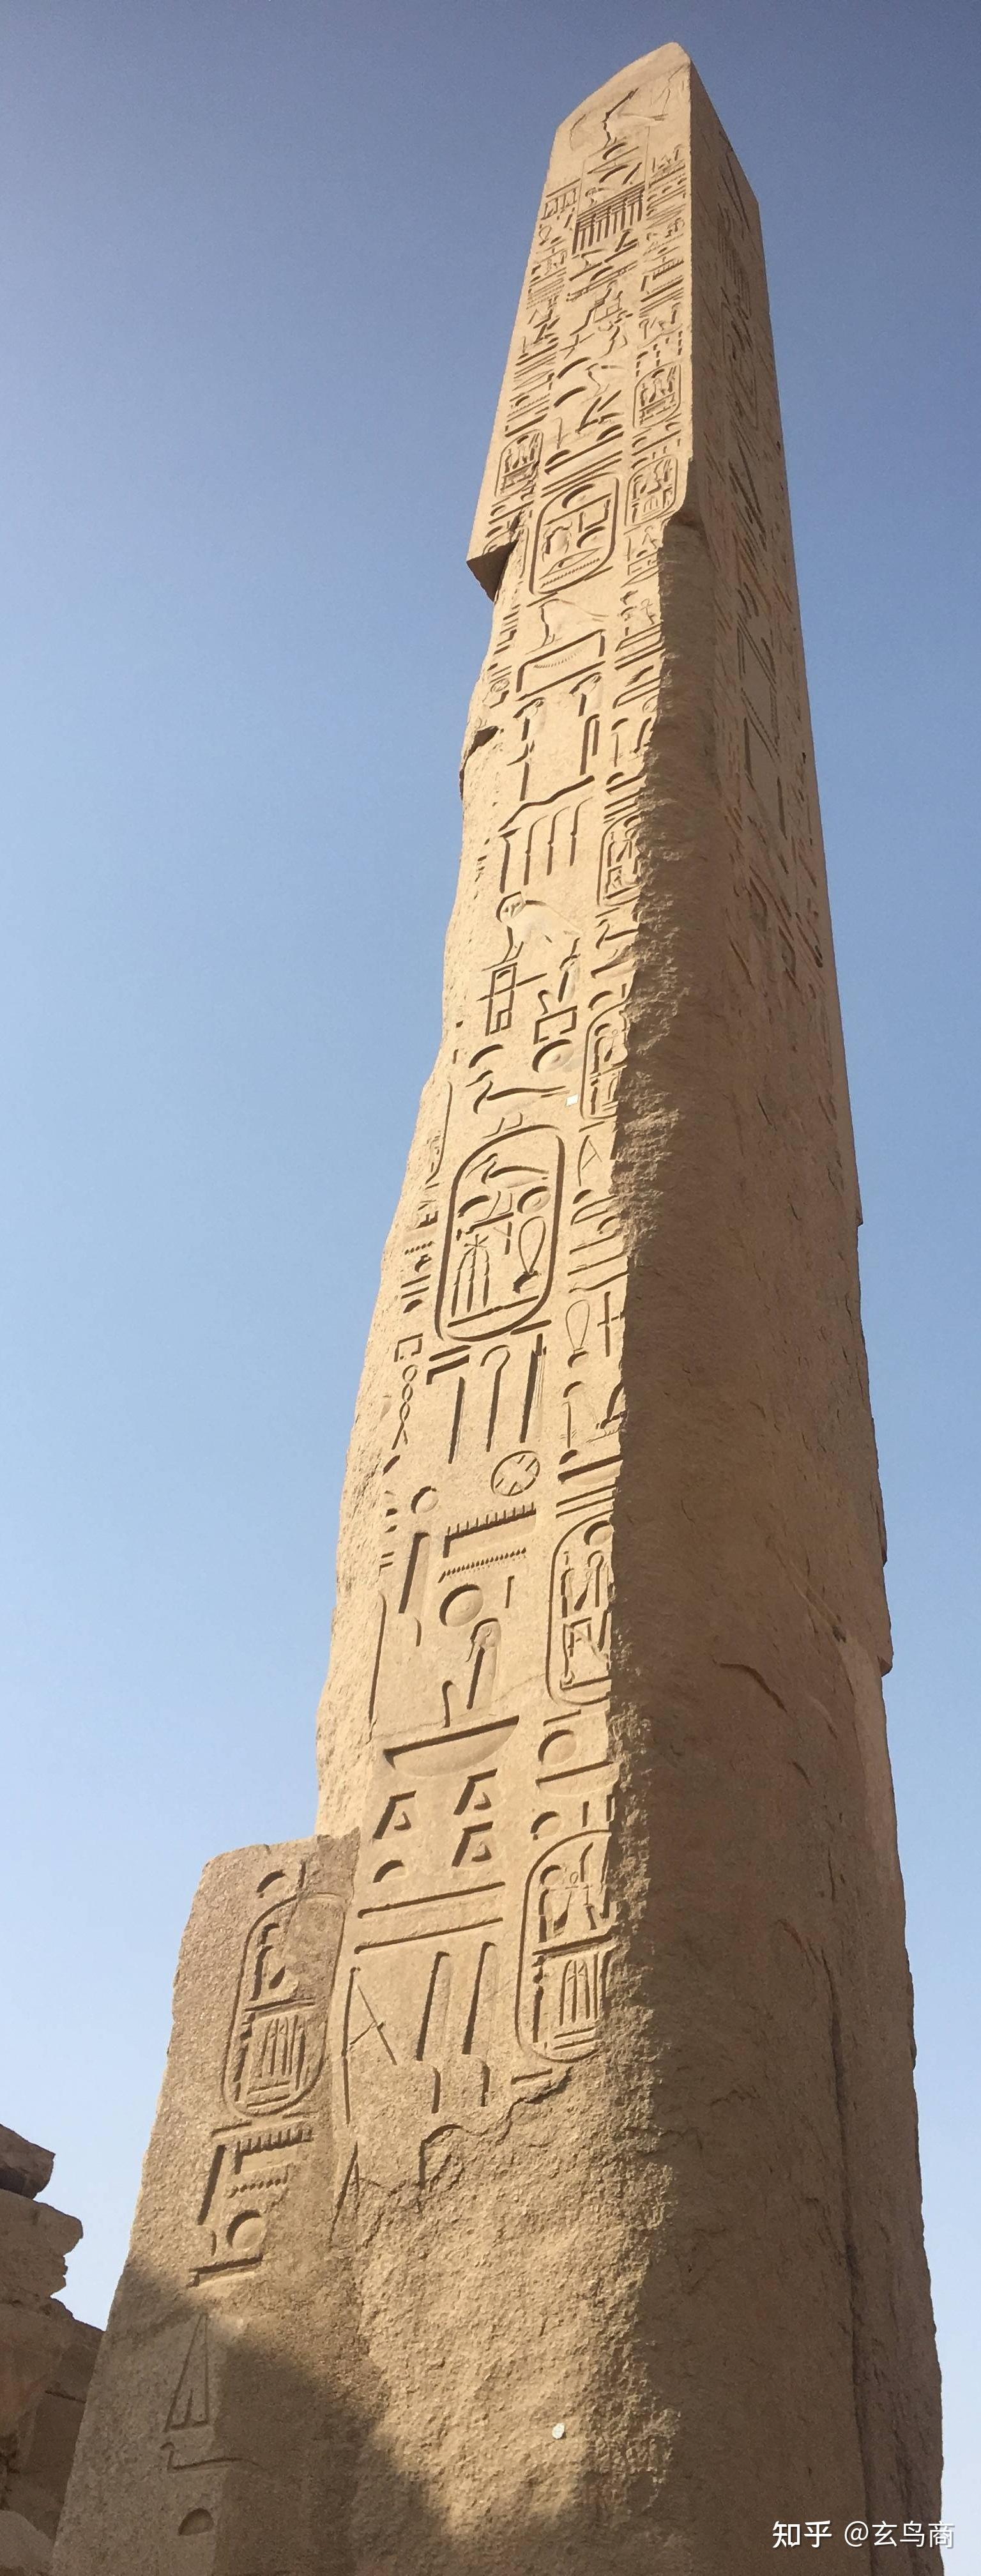 埃及方尖碑的剧烈的看法 库存图片. 图片 包括有 镇痛药, 传统, 埃及, 天空, 安排, 庭院, 方尖碑 - 42338079